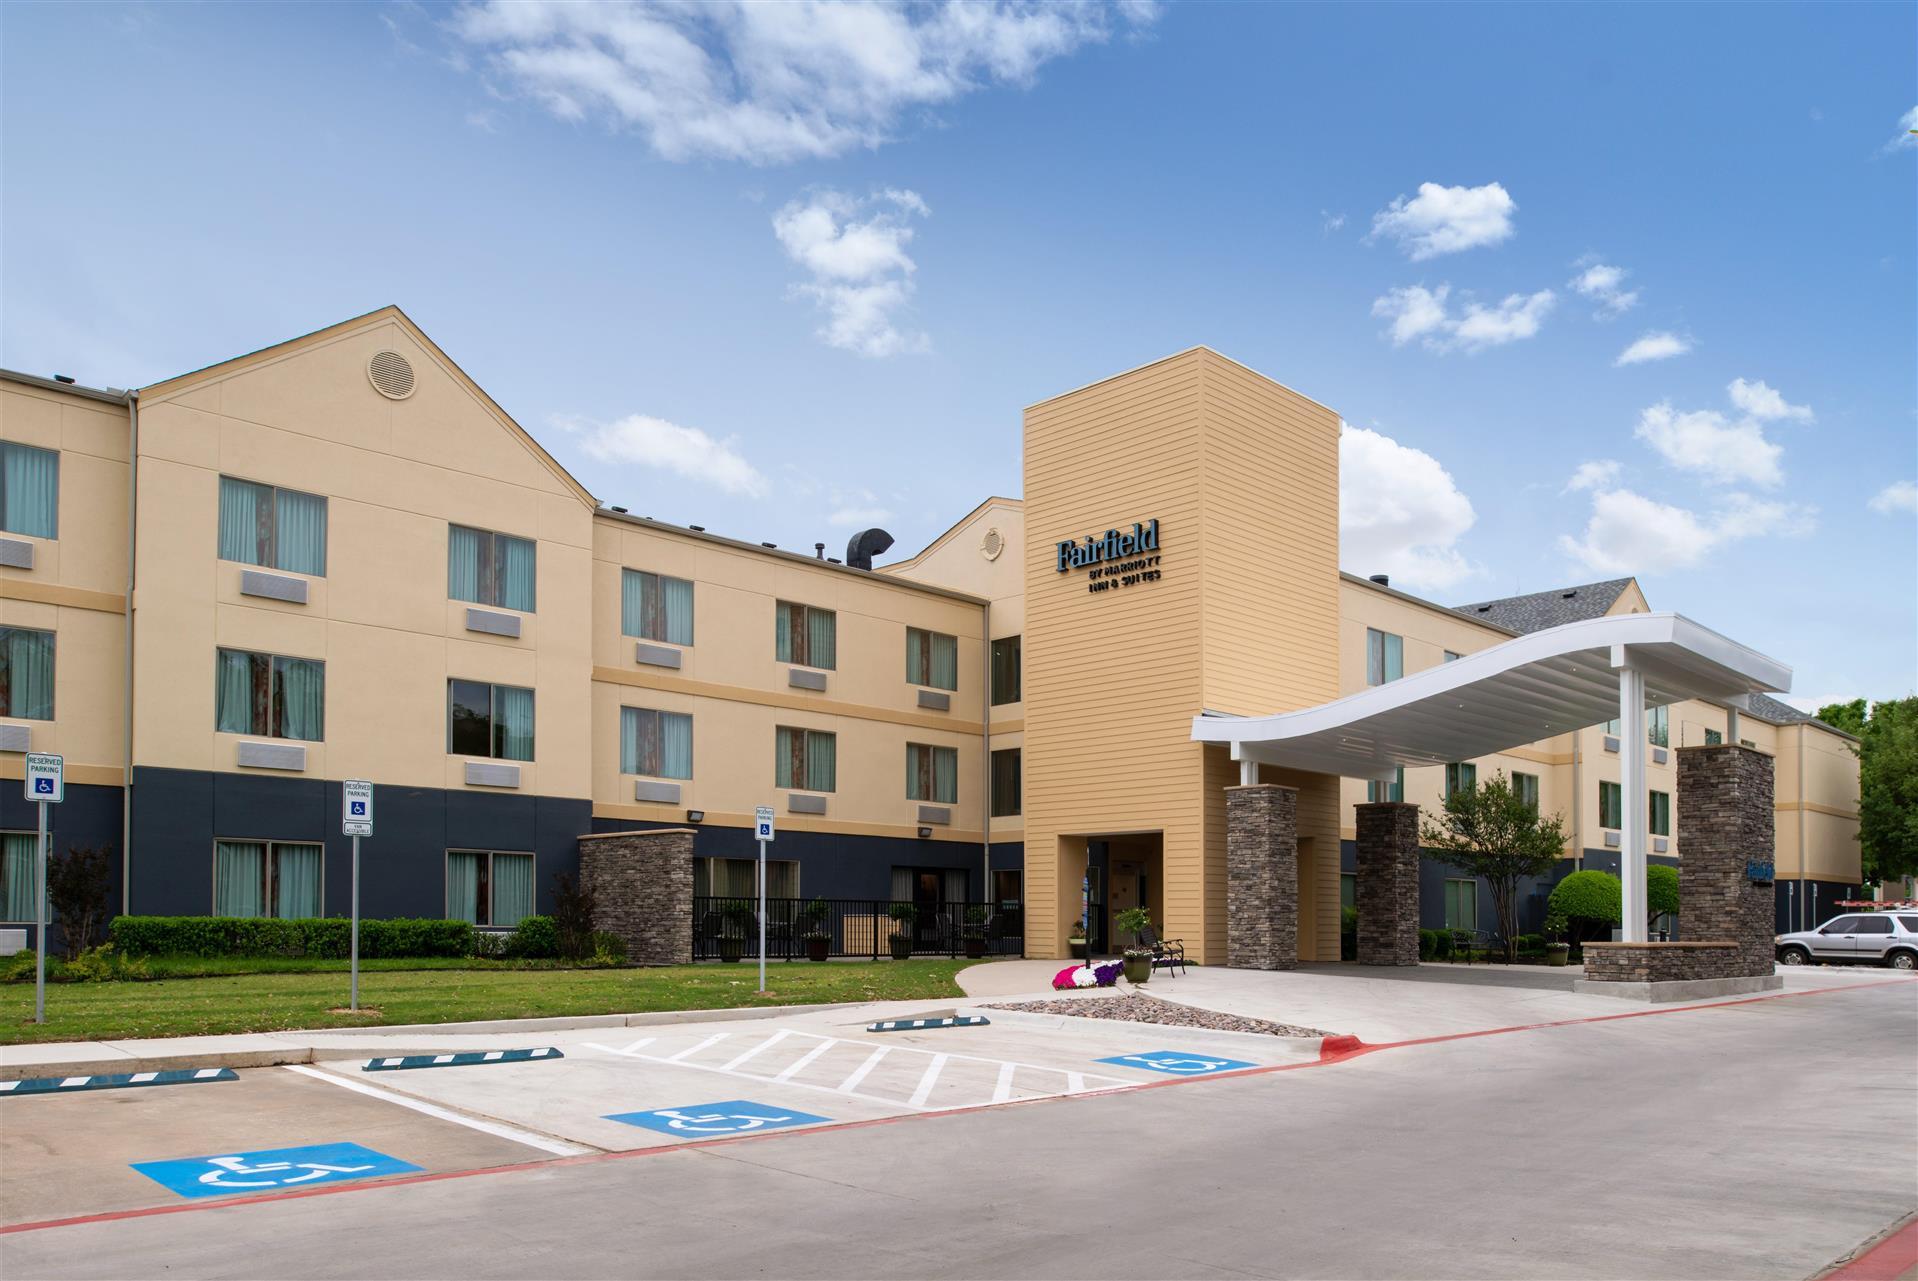 Fairfield Inn & Suites Arlington Near Six Flags in Arlington, TX